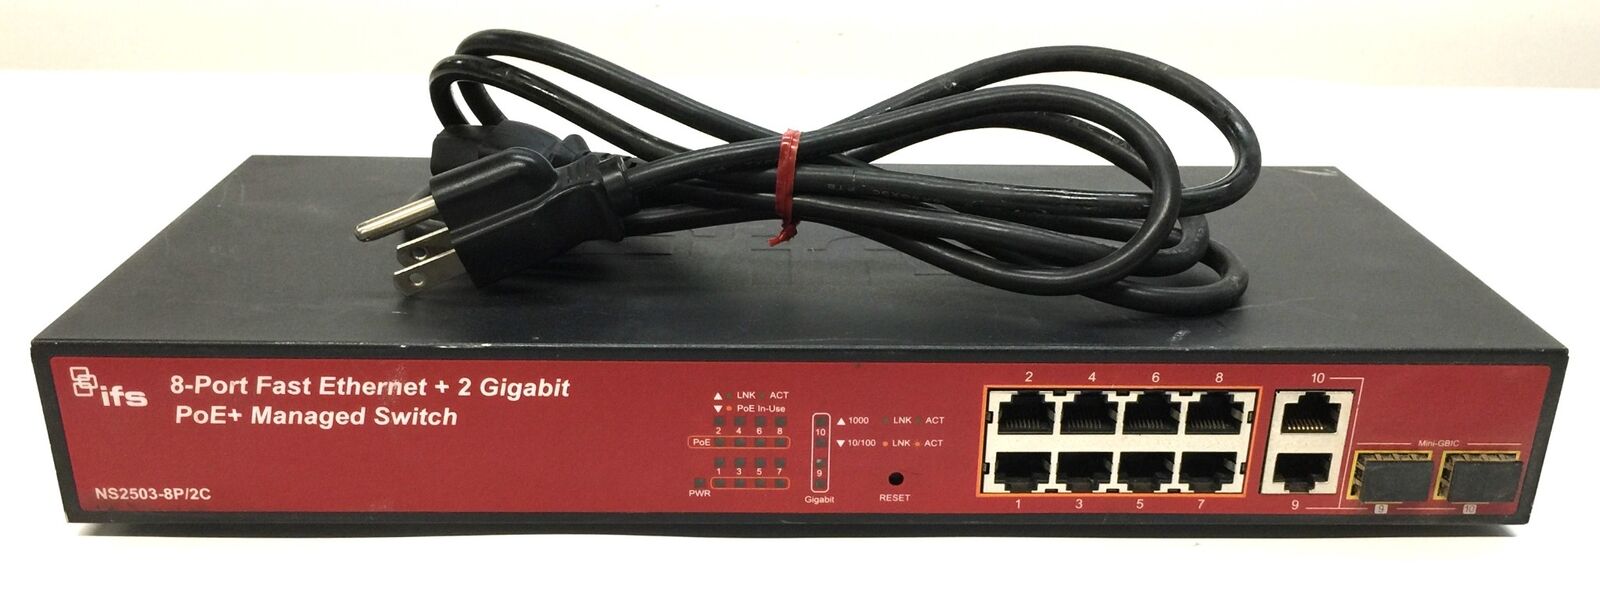 Interlogix 8-Port Fast Ethernet +2 Gigabit PoE+ Managed Switch NS2503-8P/2C USED